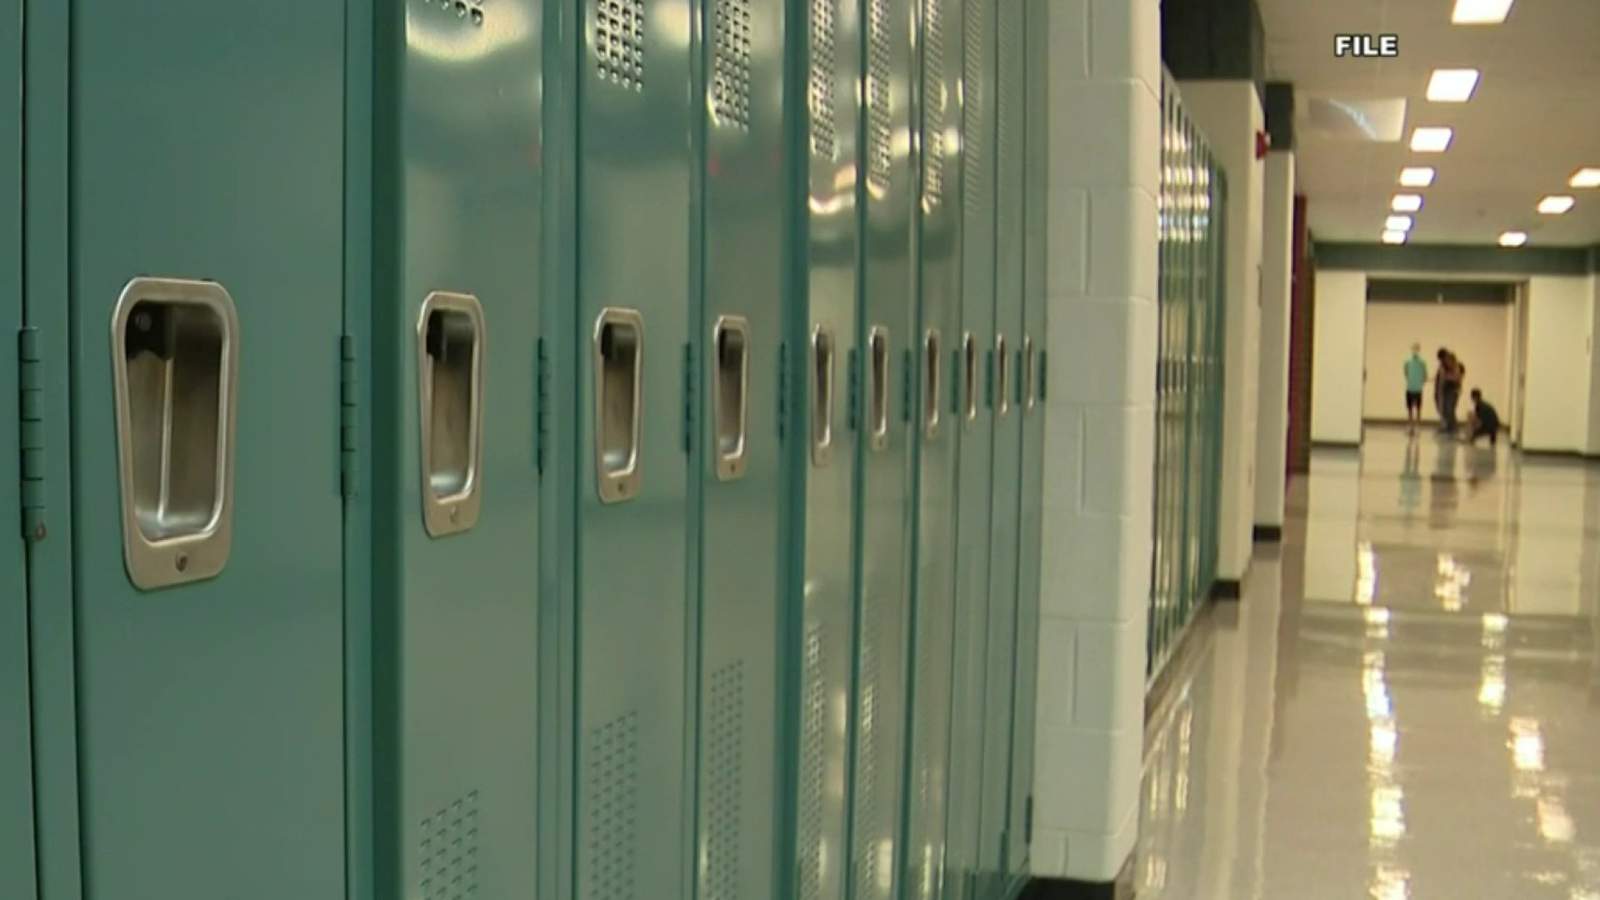 Detroit public schools scramble to prepare for start of uncertain semester